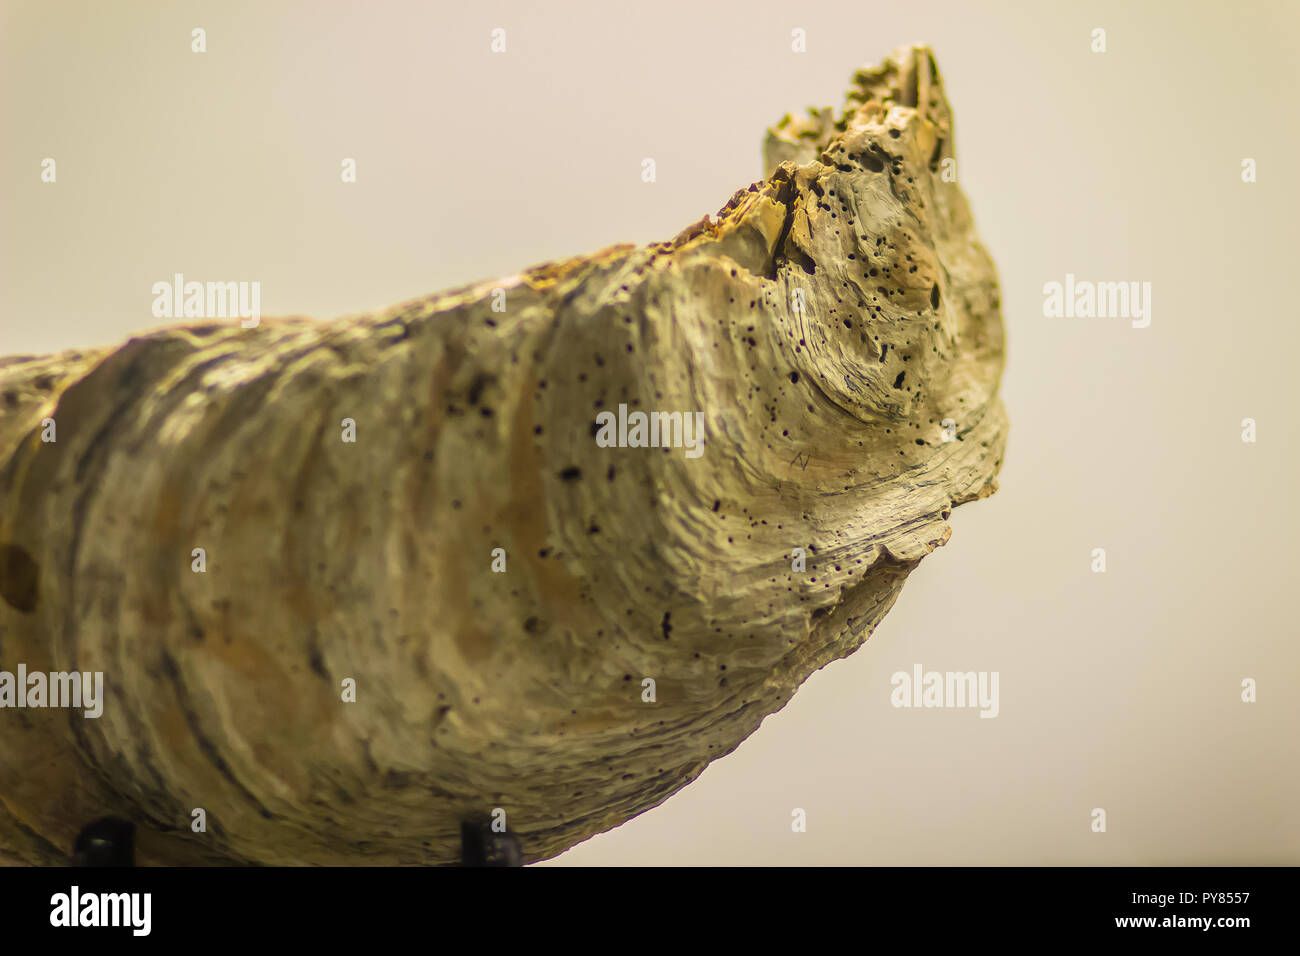 Riesige Pazifische Auster (Crassostrea gigas) fossilen für Bildung. Crassostrea gigas ist allgemein als Pazifische Auster, Japanische Auster oder Miyagi Oyster bekannt Stockfoto